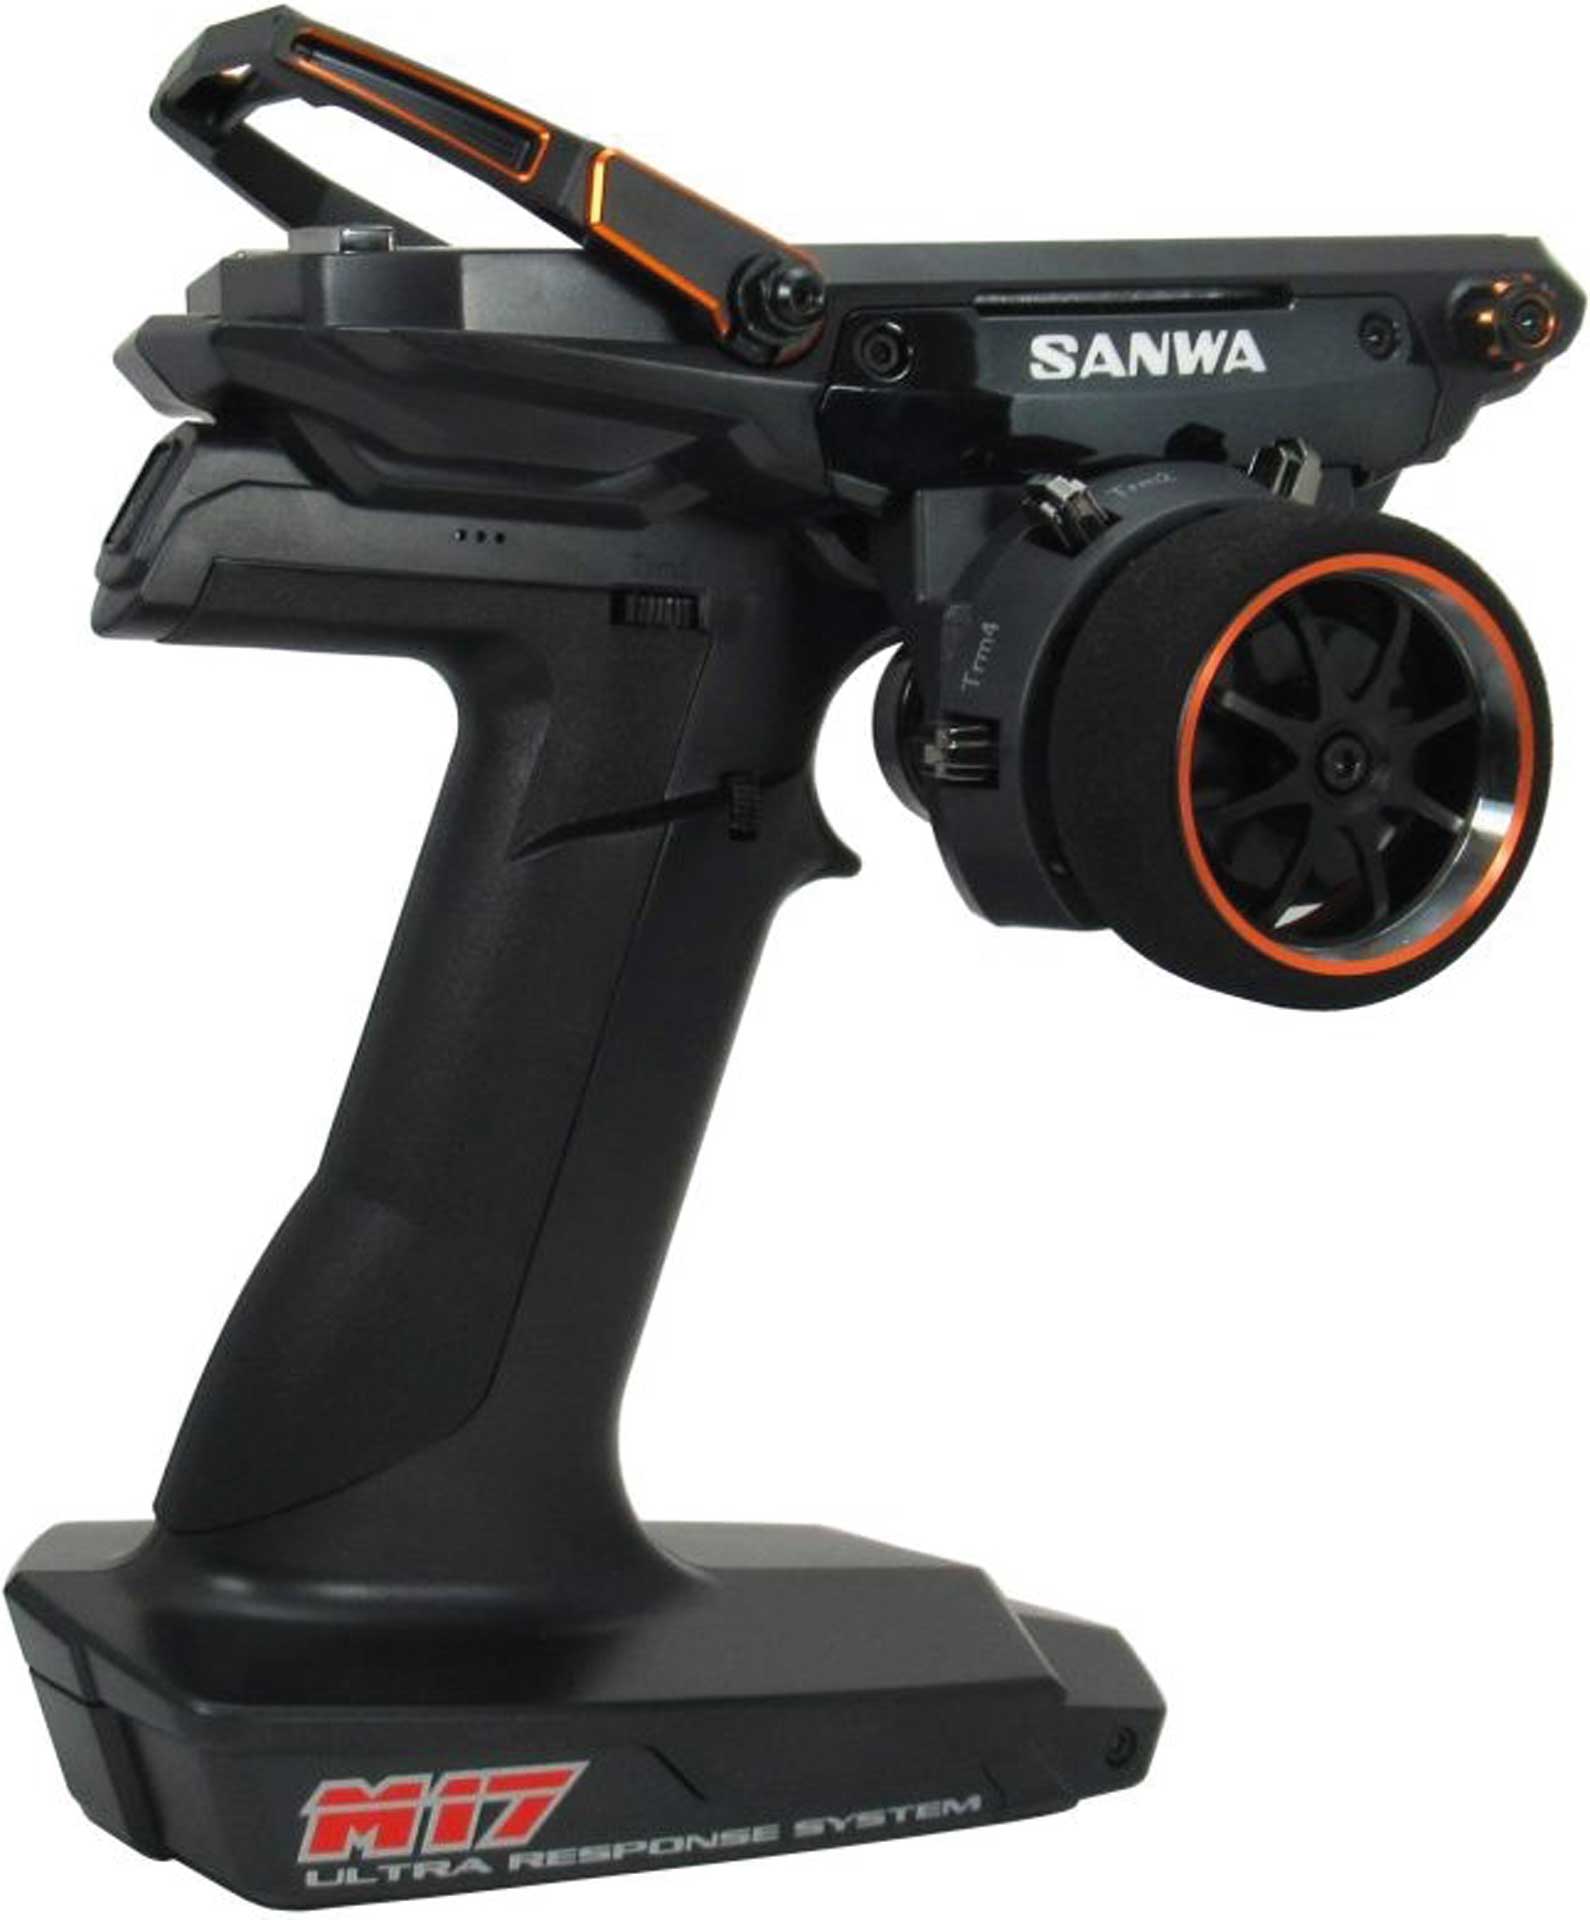 SANWA M17 - RX-493I 2.4GHZ FH5 Limited Edition Orange